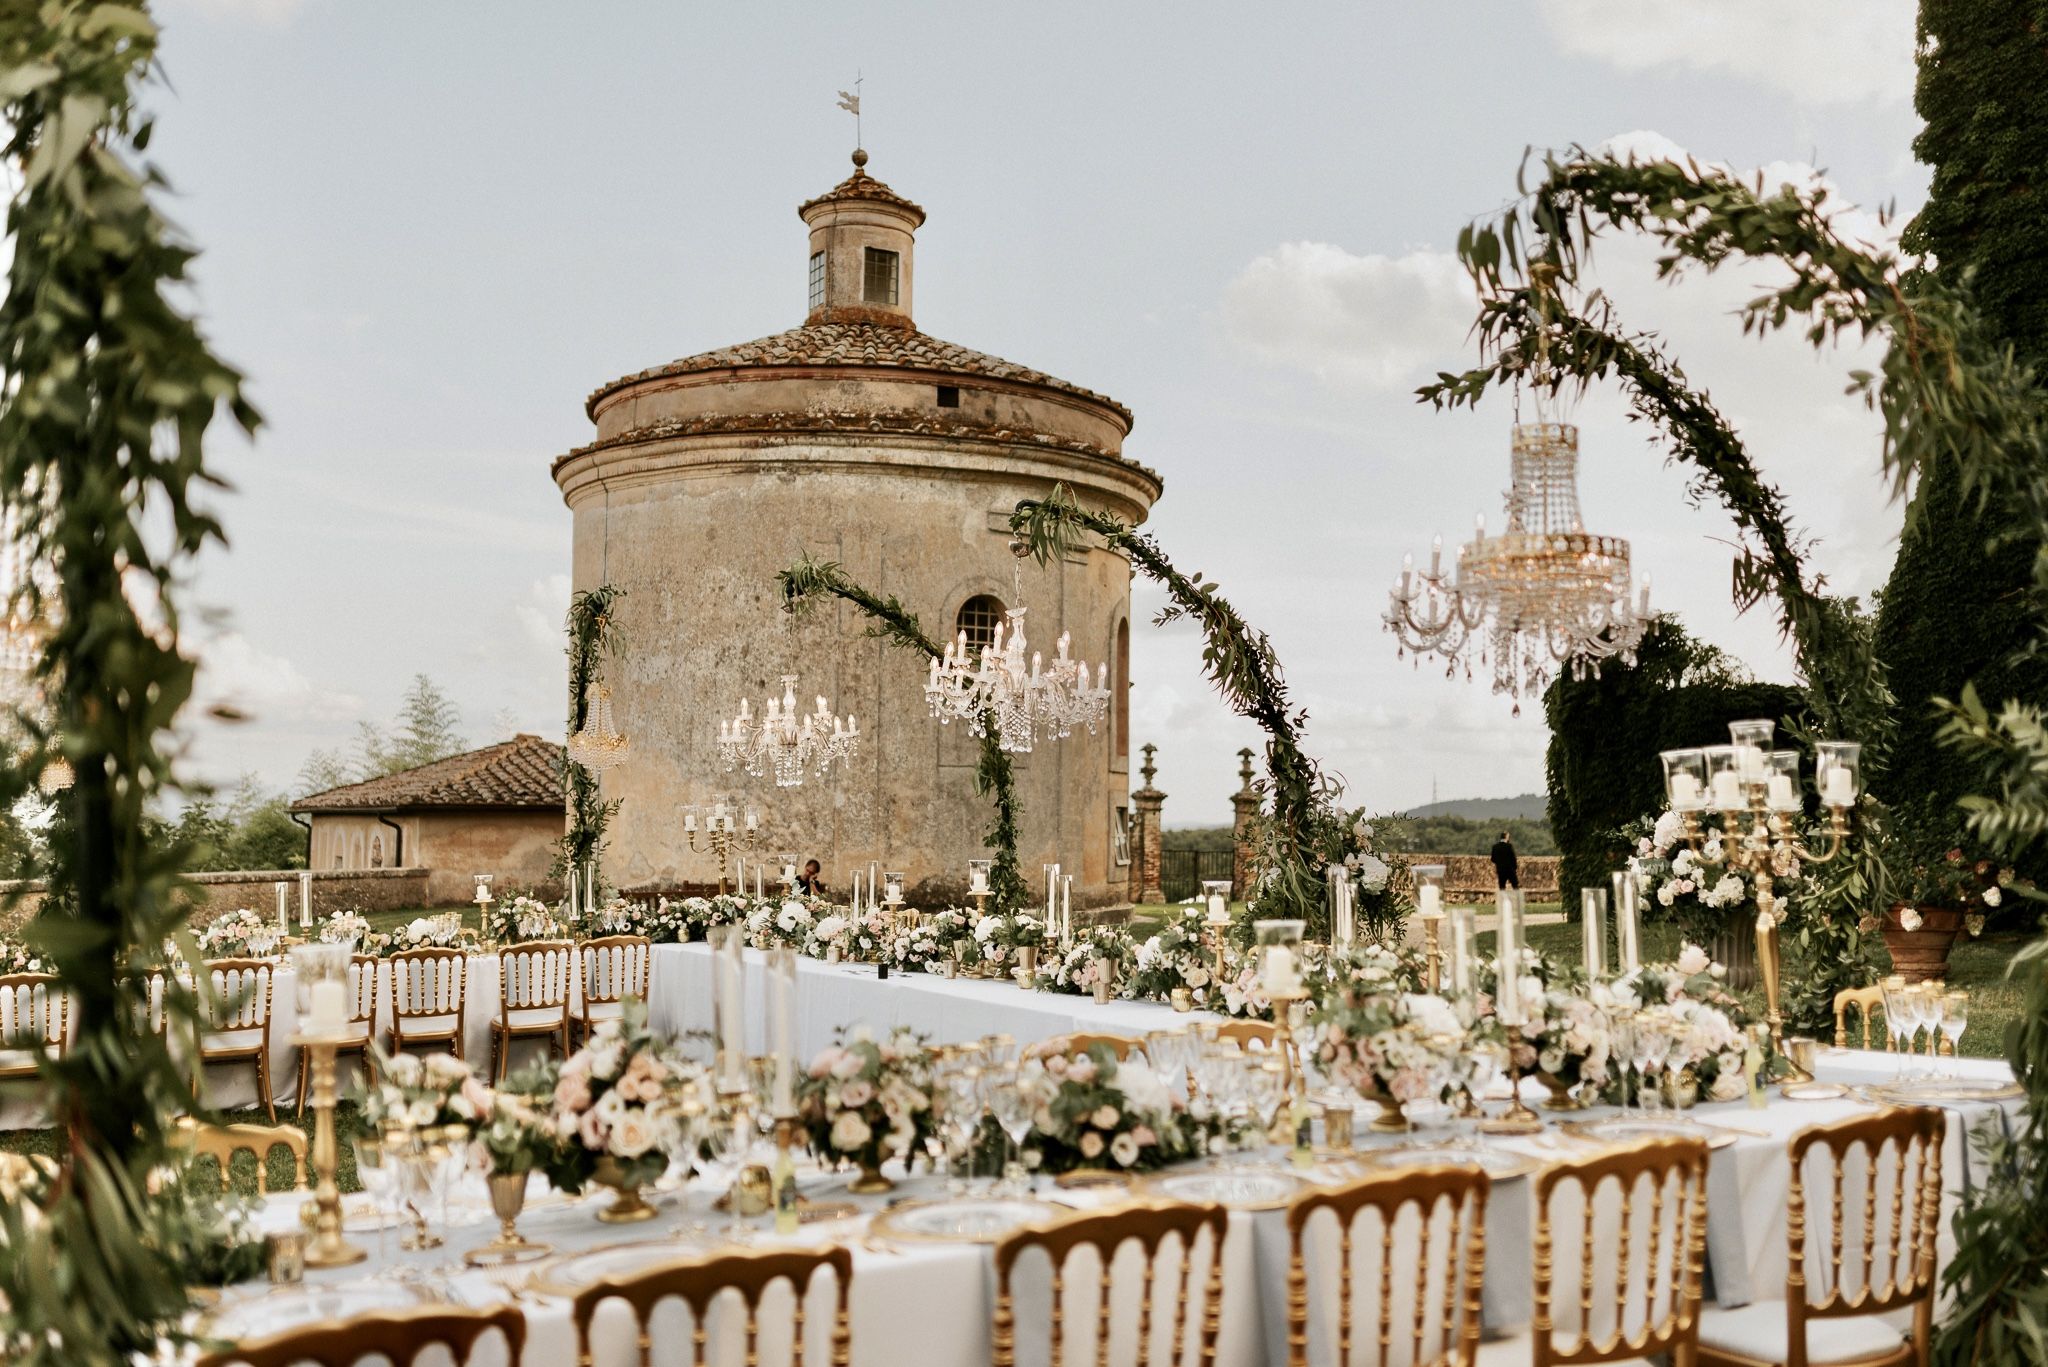 Castello di Celsa wedding